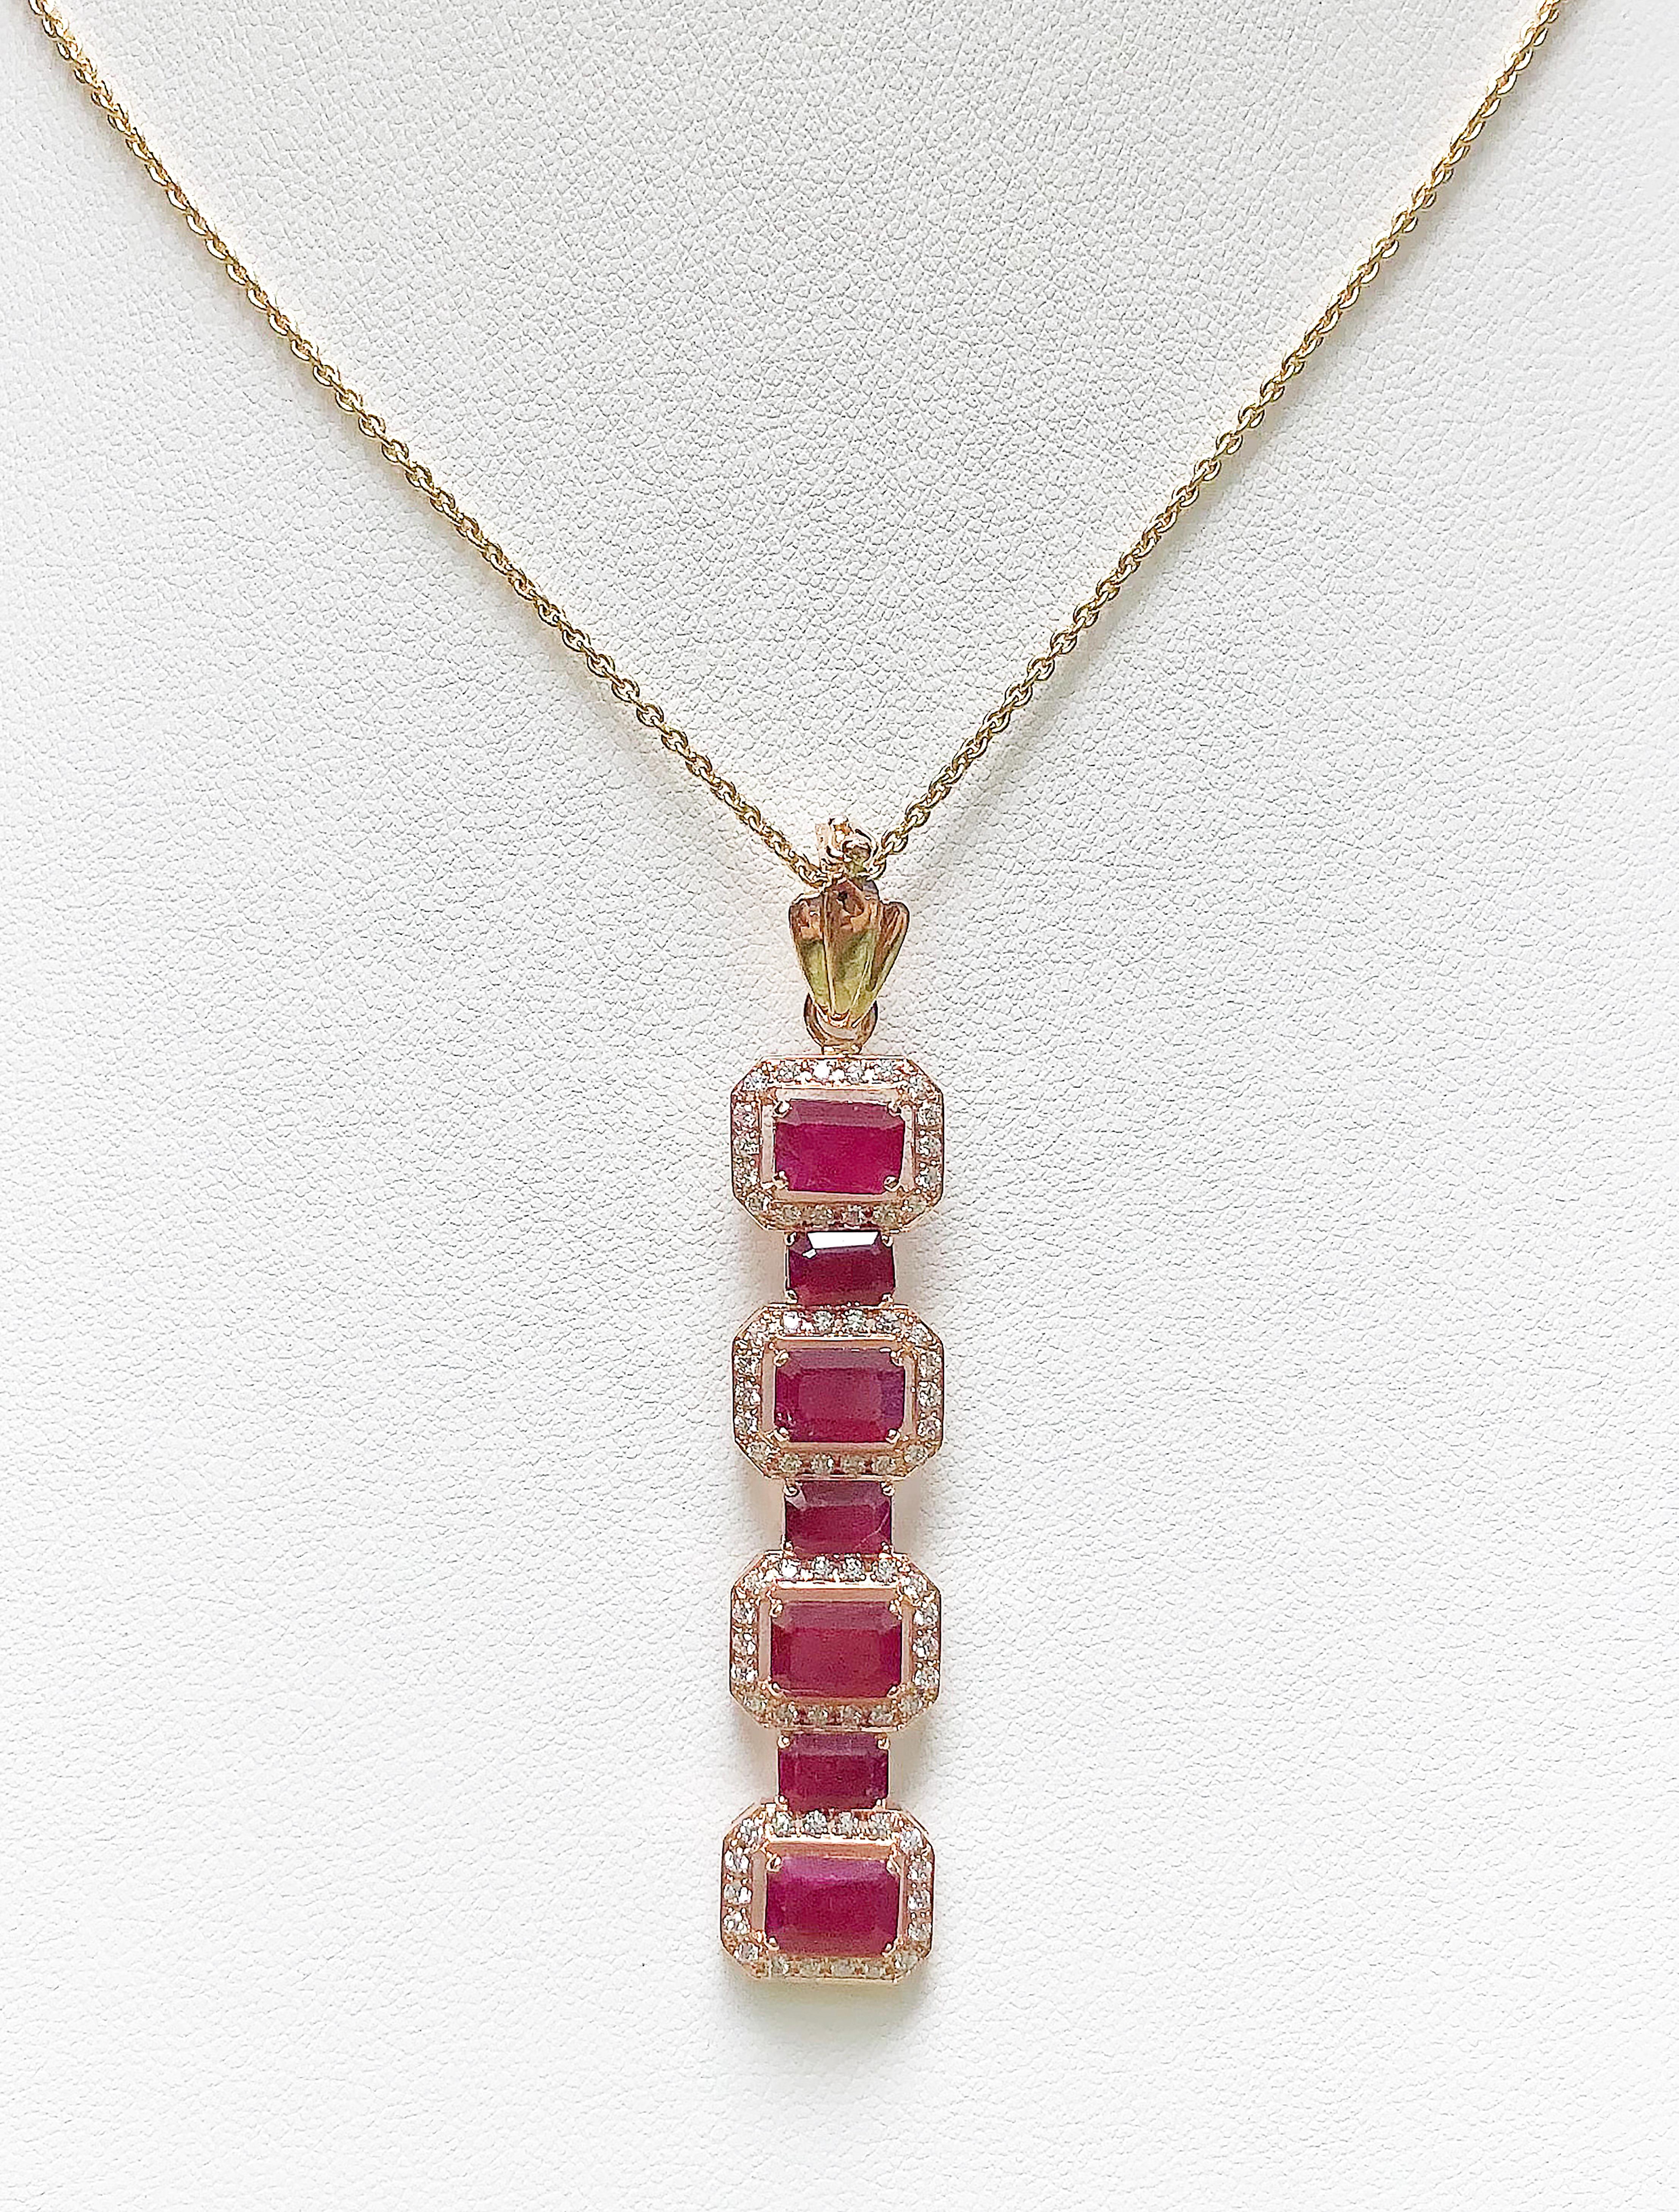 Pendentif en rubis de 6,32 carats et diamant de 0,58 carat serti dans une monture en or rose 18 carats
(chaîne non incluse)

Largeur :  1.2 cm 
Longueur : 6,3 cm
Poids total : 8,36 grammes

